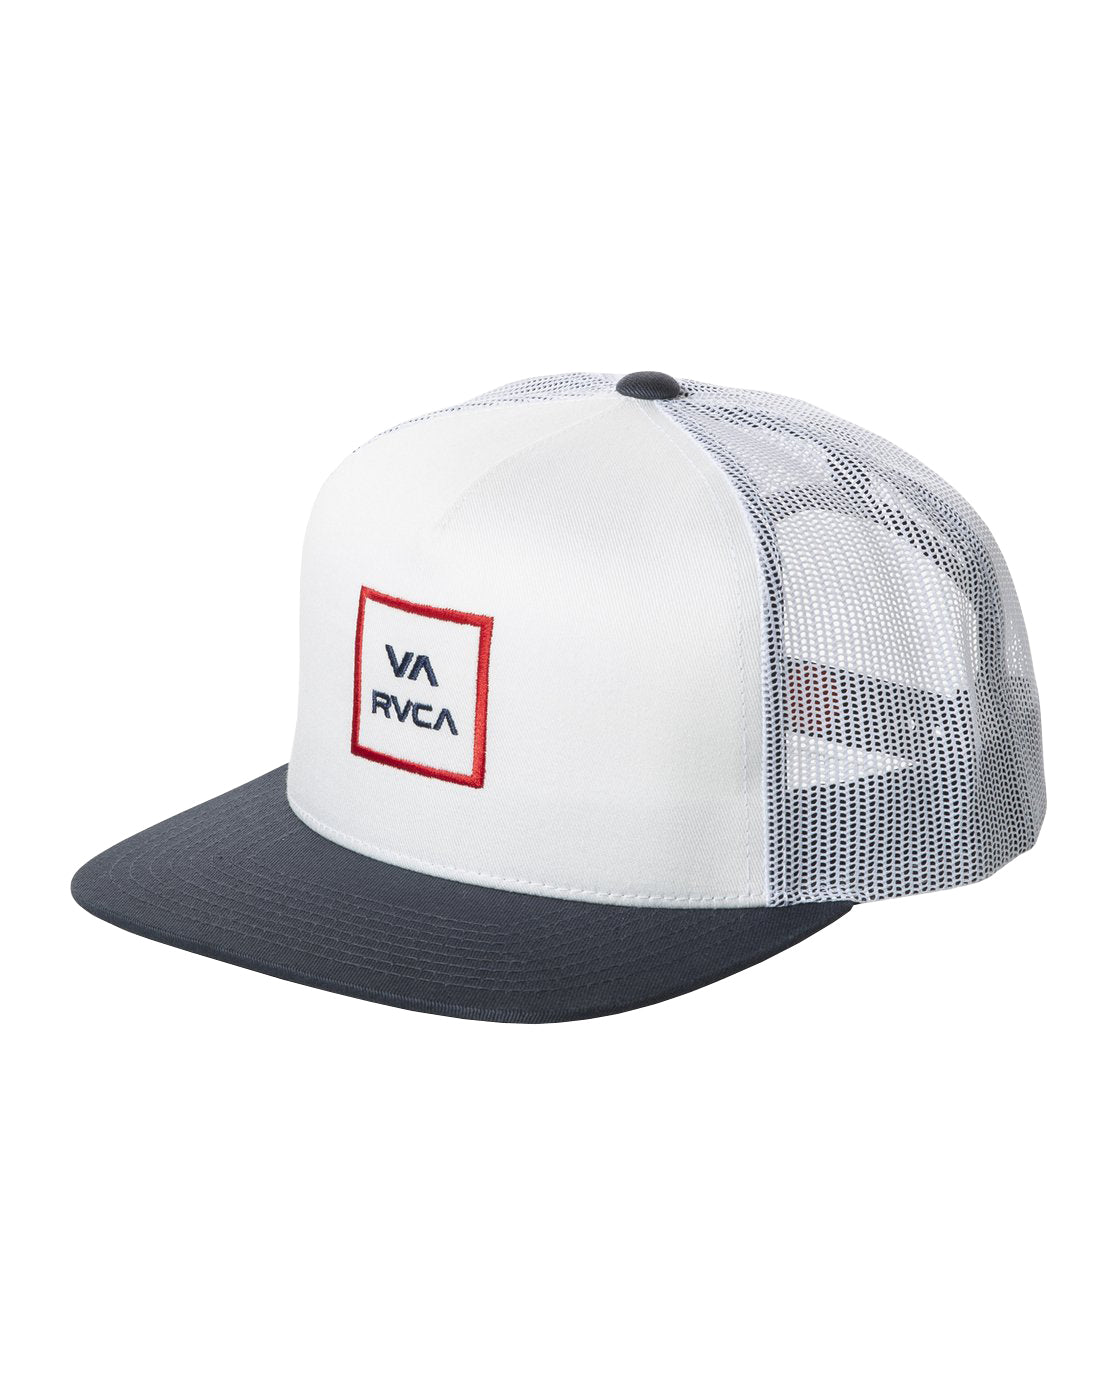 RVCA VA All The Way Trucker Hat WTD OS